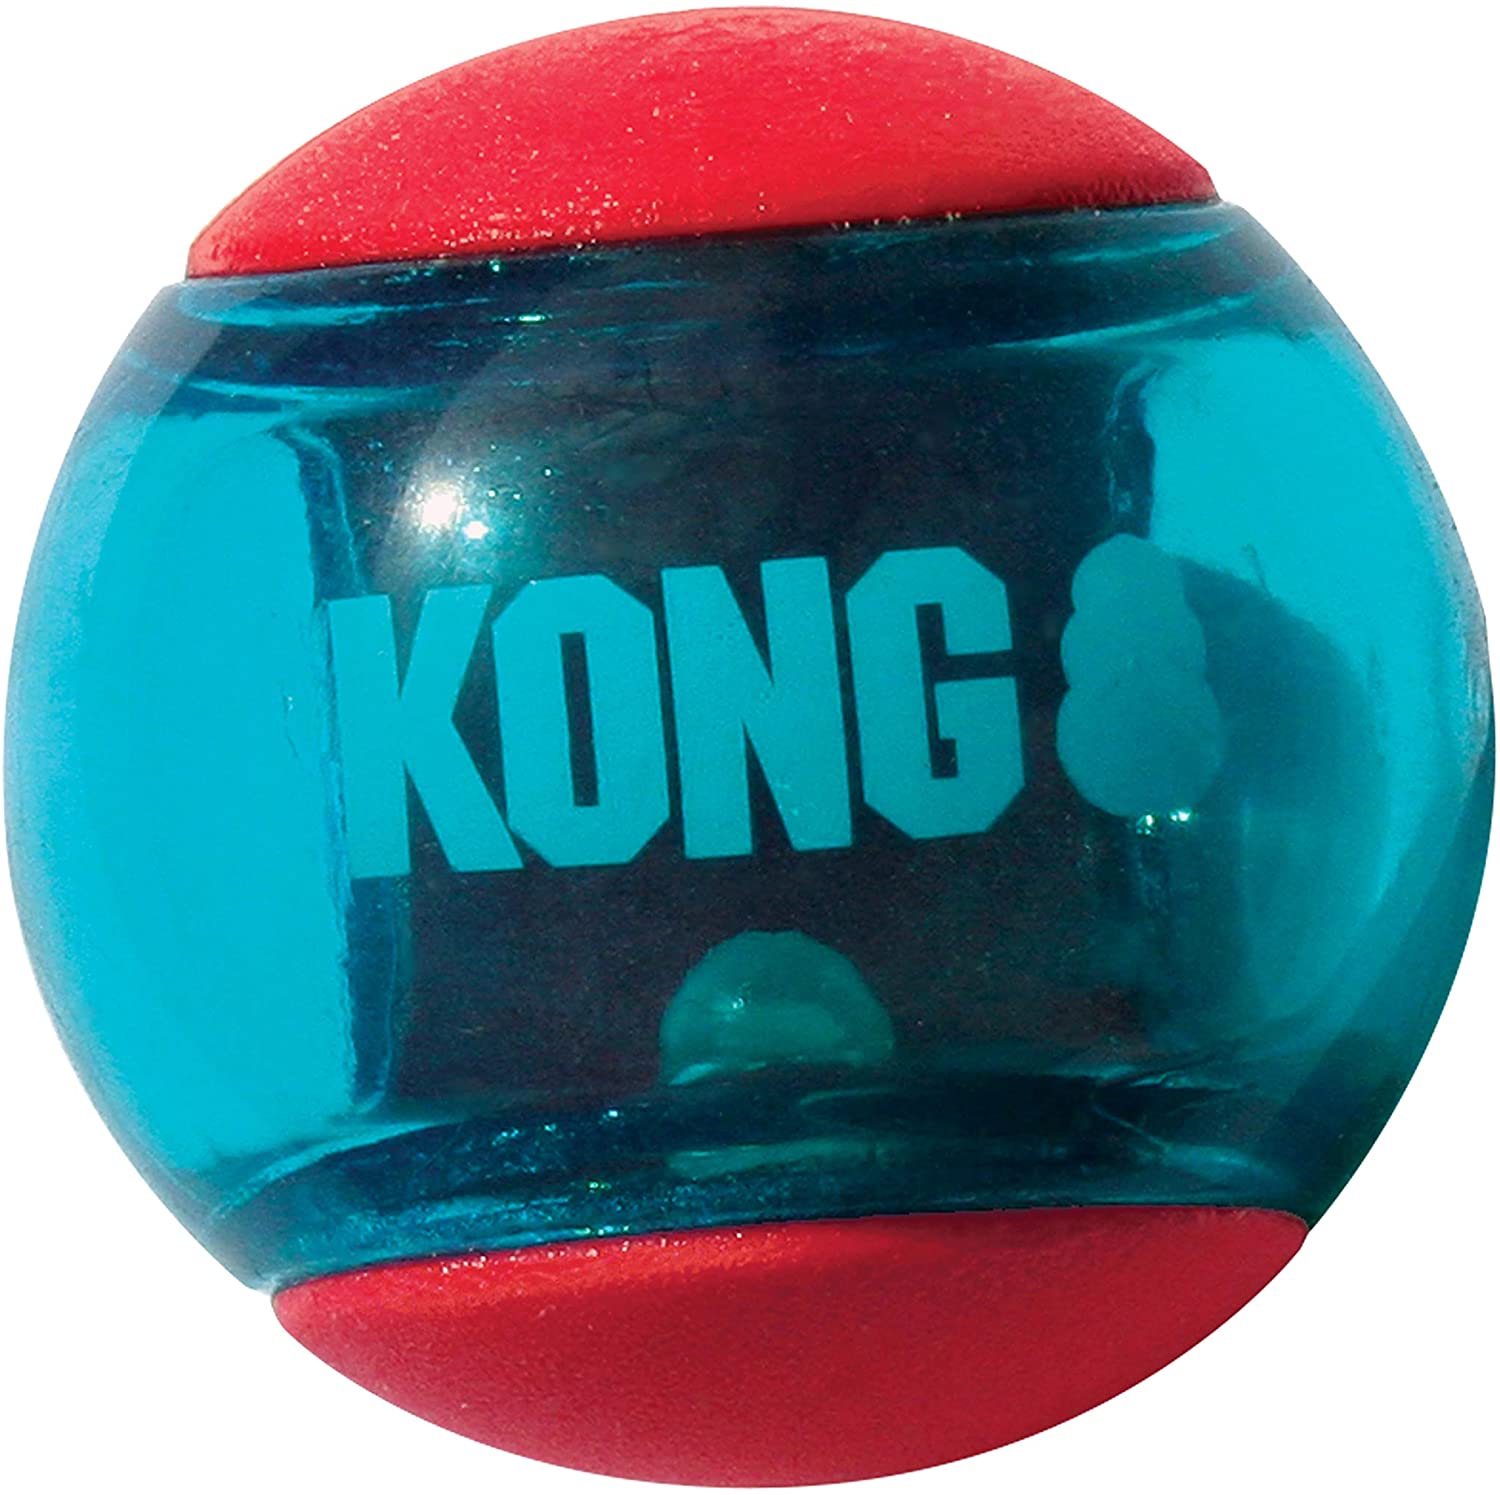  KONG - Squeezz Action Ball - Juguete sonoro para buscar con textura - Raza mediana (rojo) 